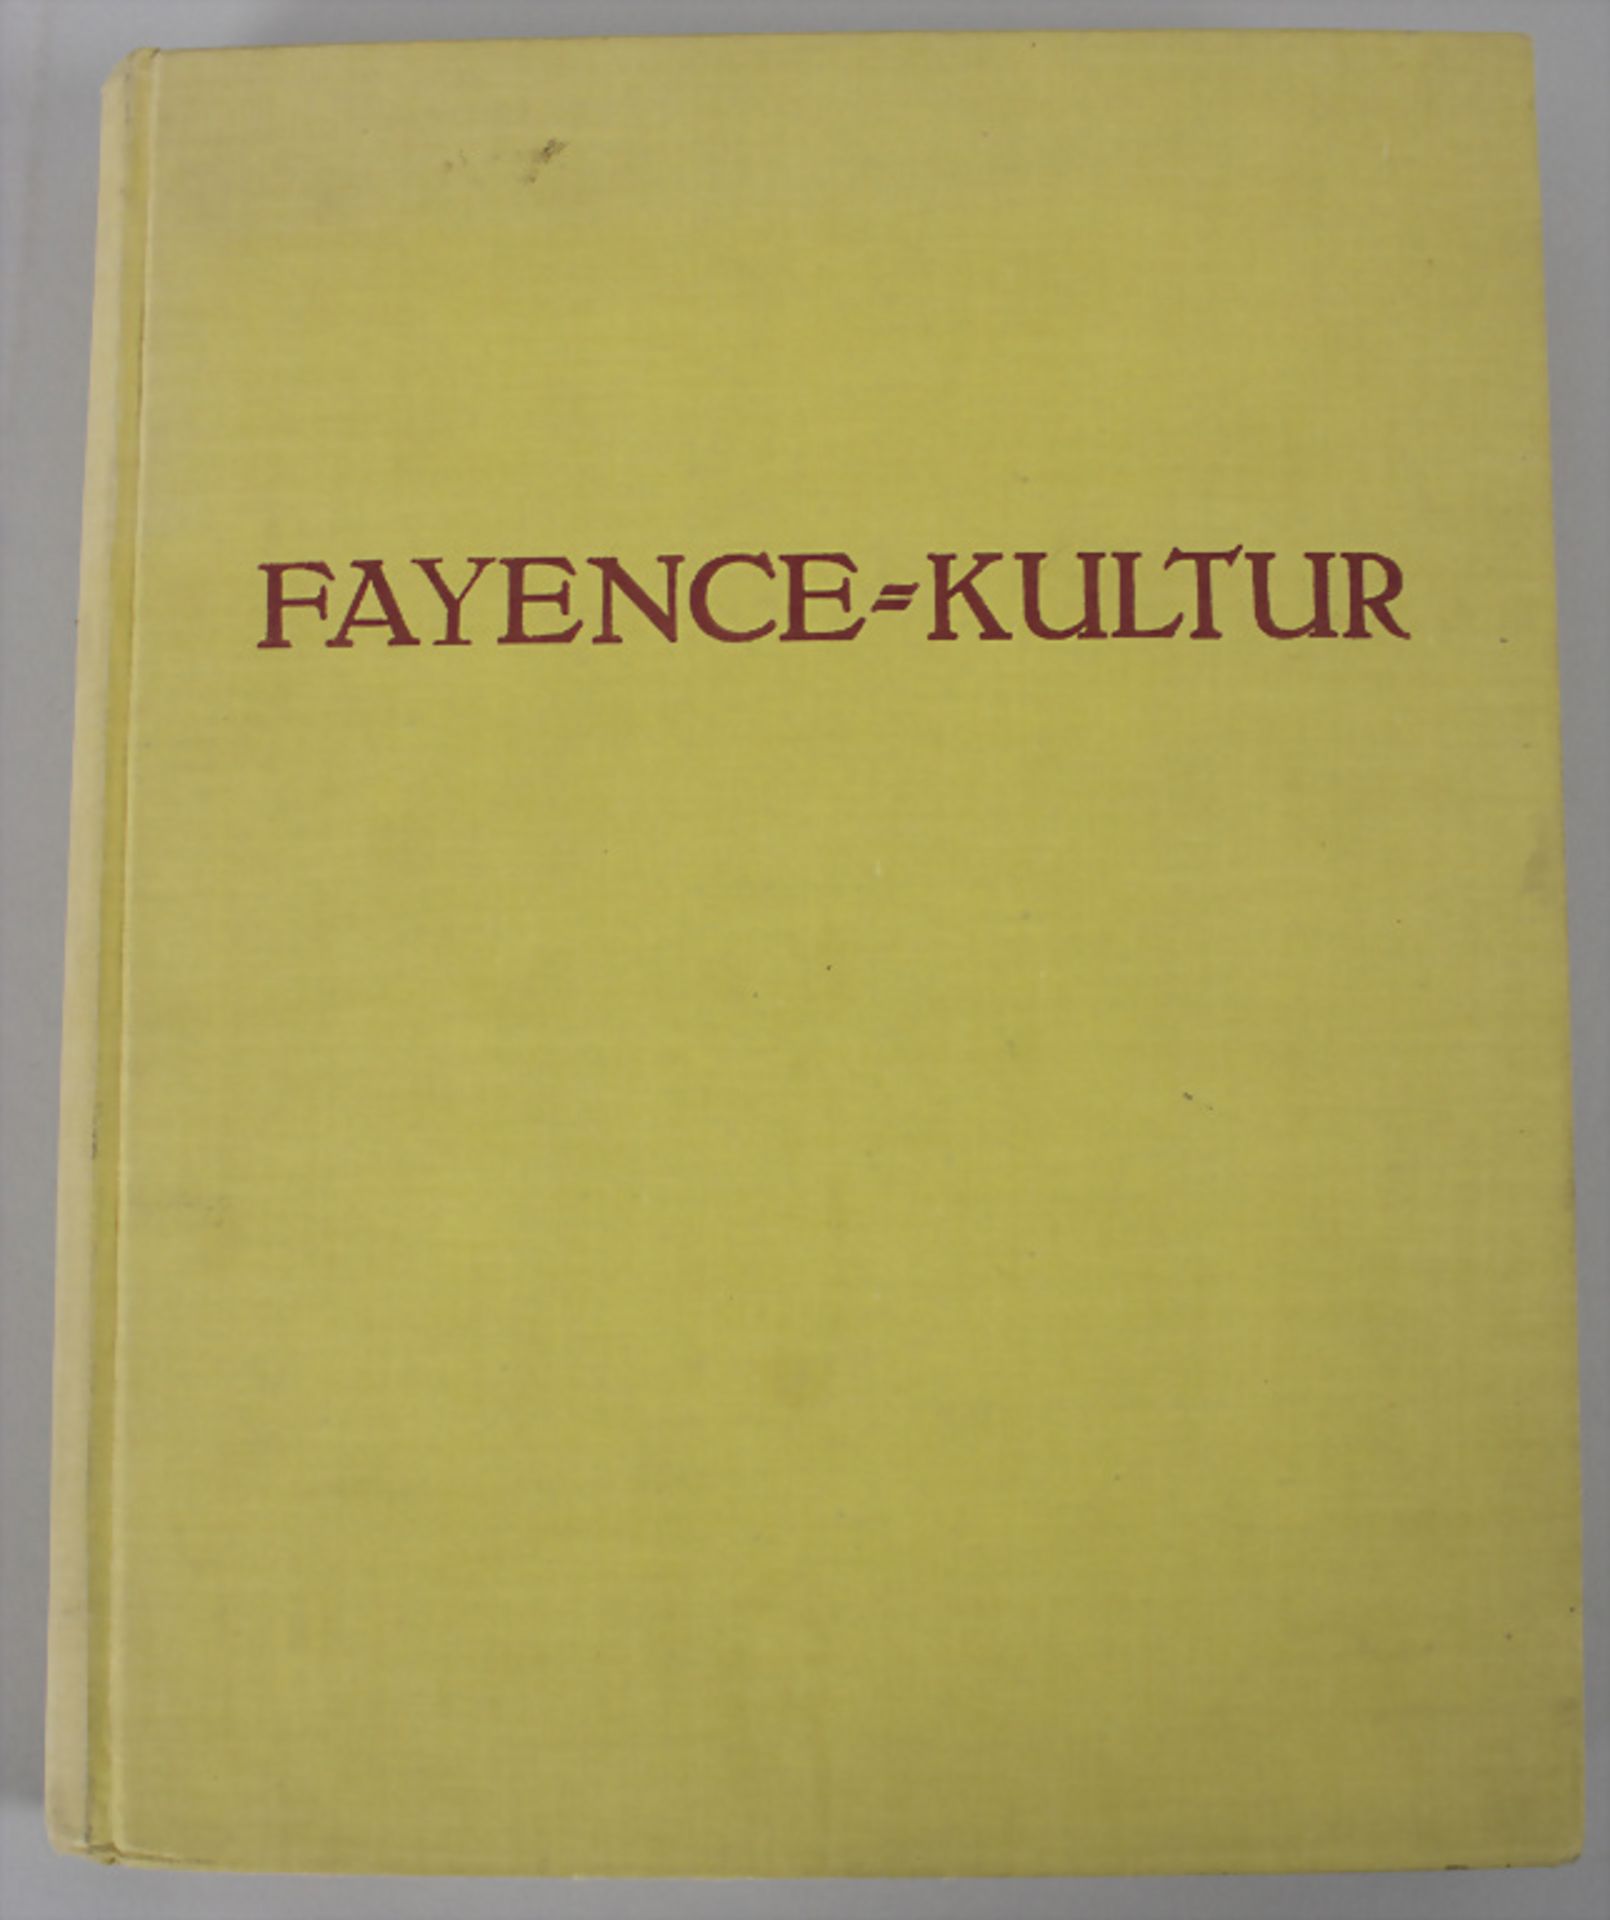 Eduard Fuchs, Paul Heiland: 'Die deutsche Fayence-Kultur', Band 3 München, 1925 - Bild 2 aus 7